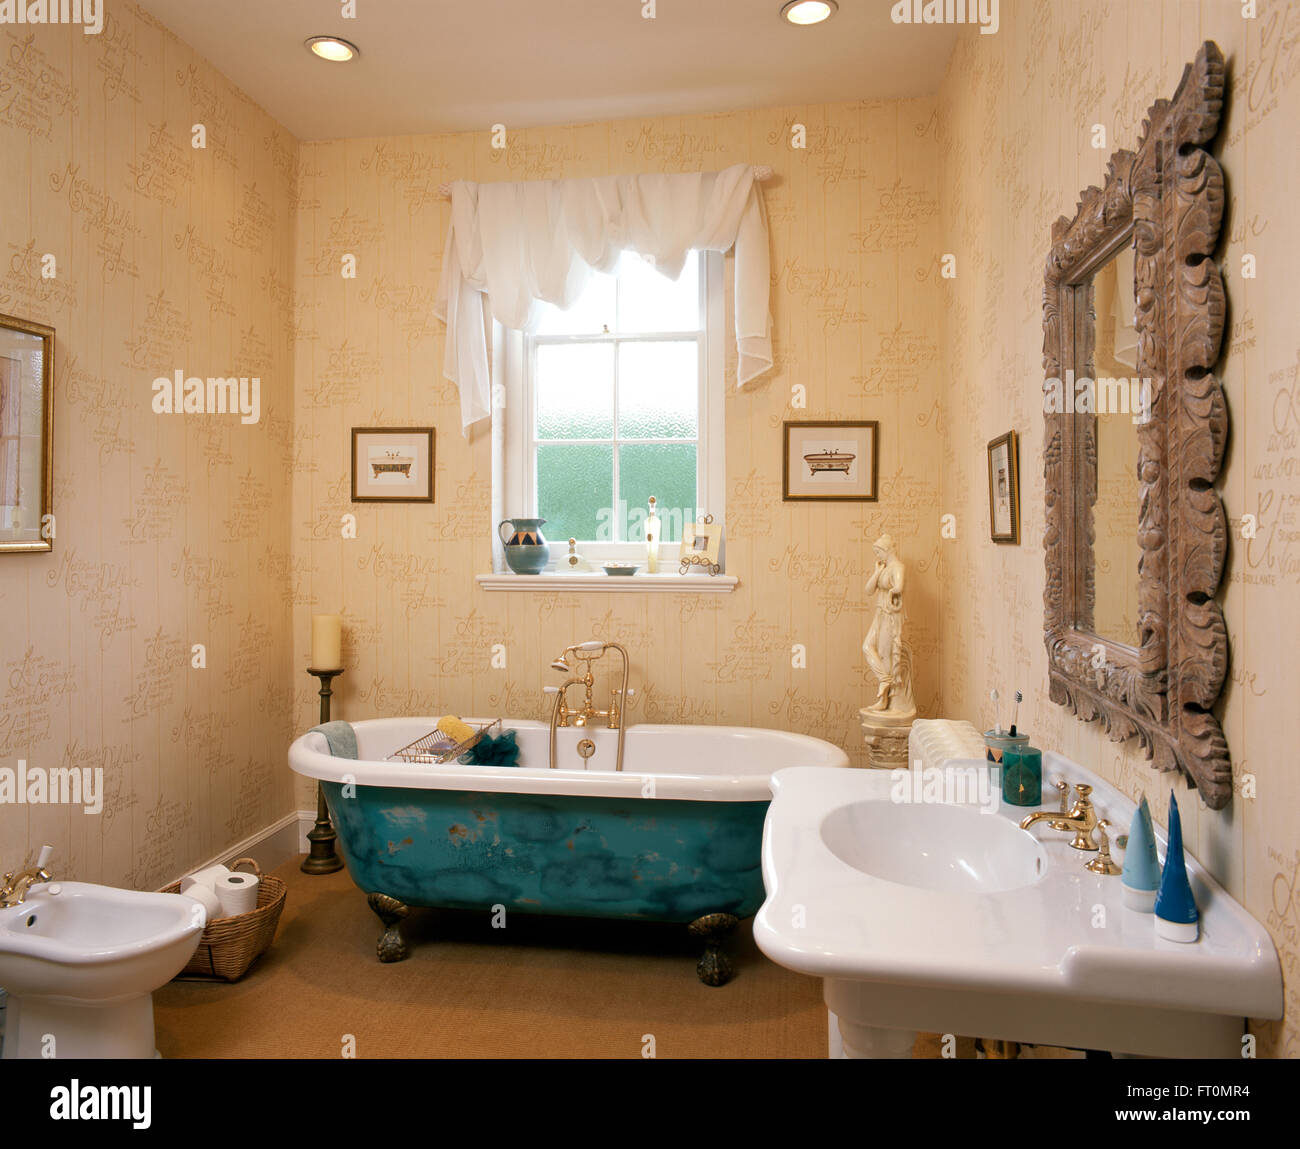 Bianco tessuto drappeggiato sul polo sulla finestra sopra un dipinto decorativamente roll top bagno in un bagno con una spugnatura effetto vernice Foto Stock